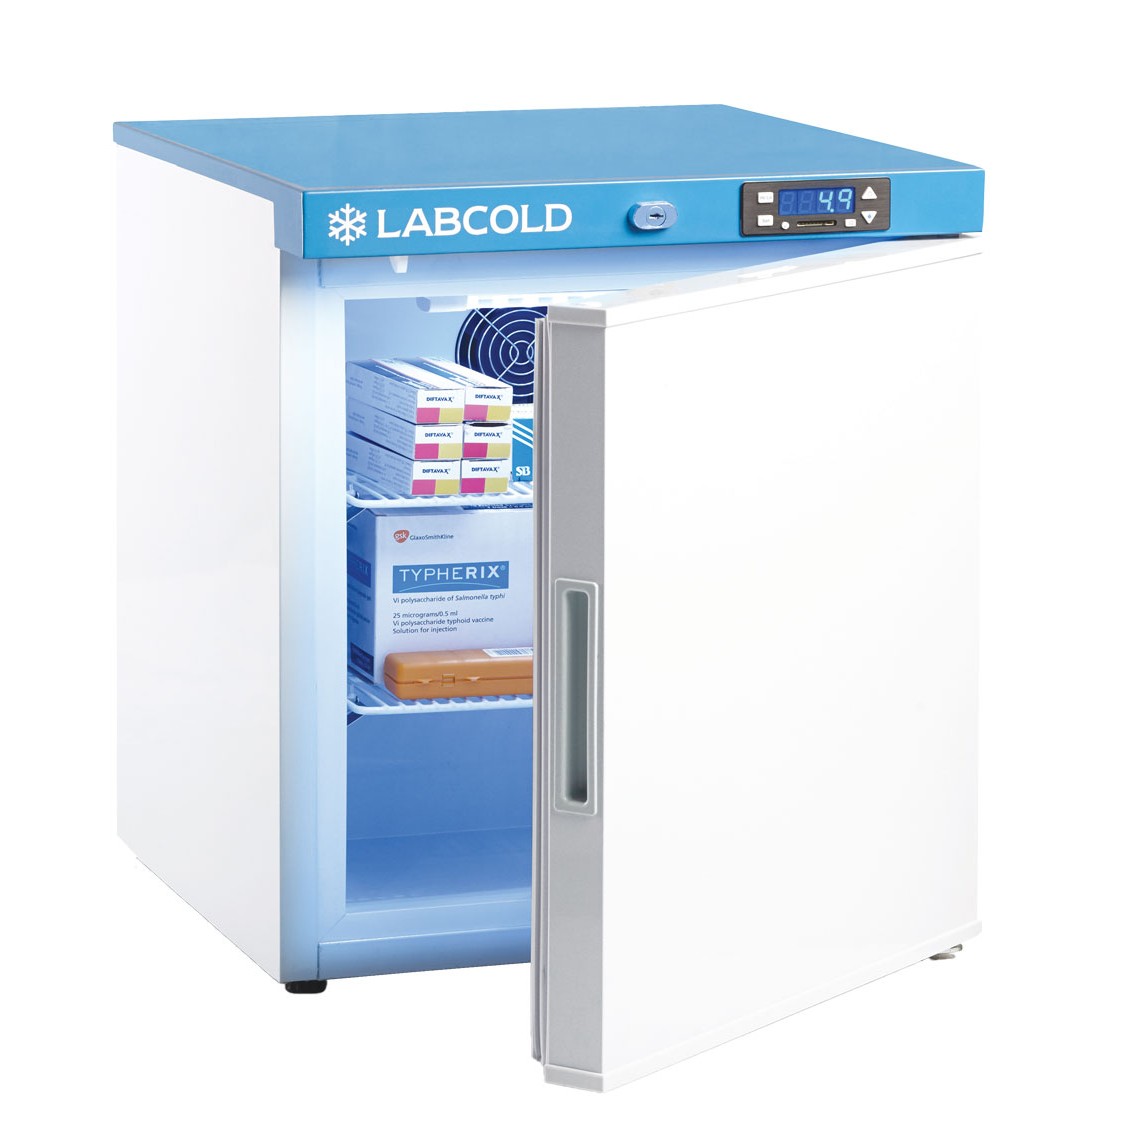 Labcold pharmacy fridge 36 litres